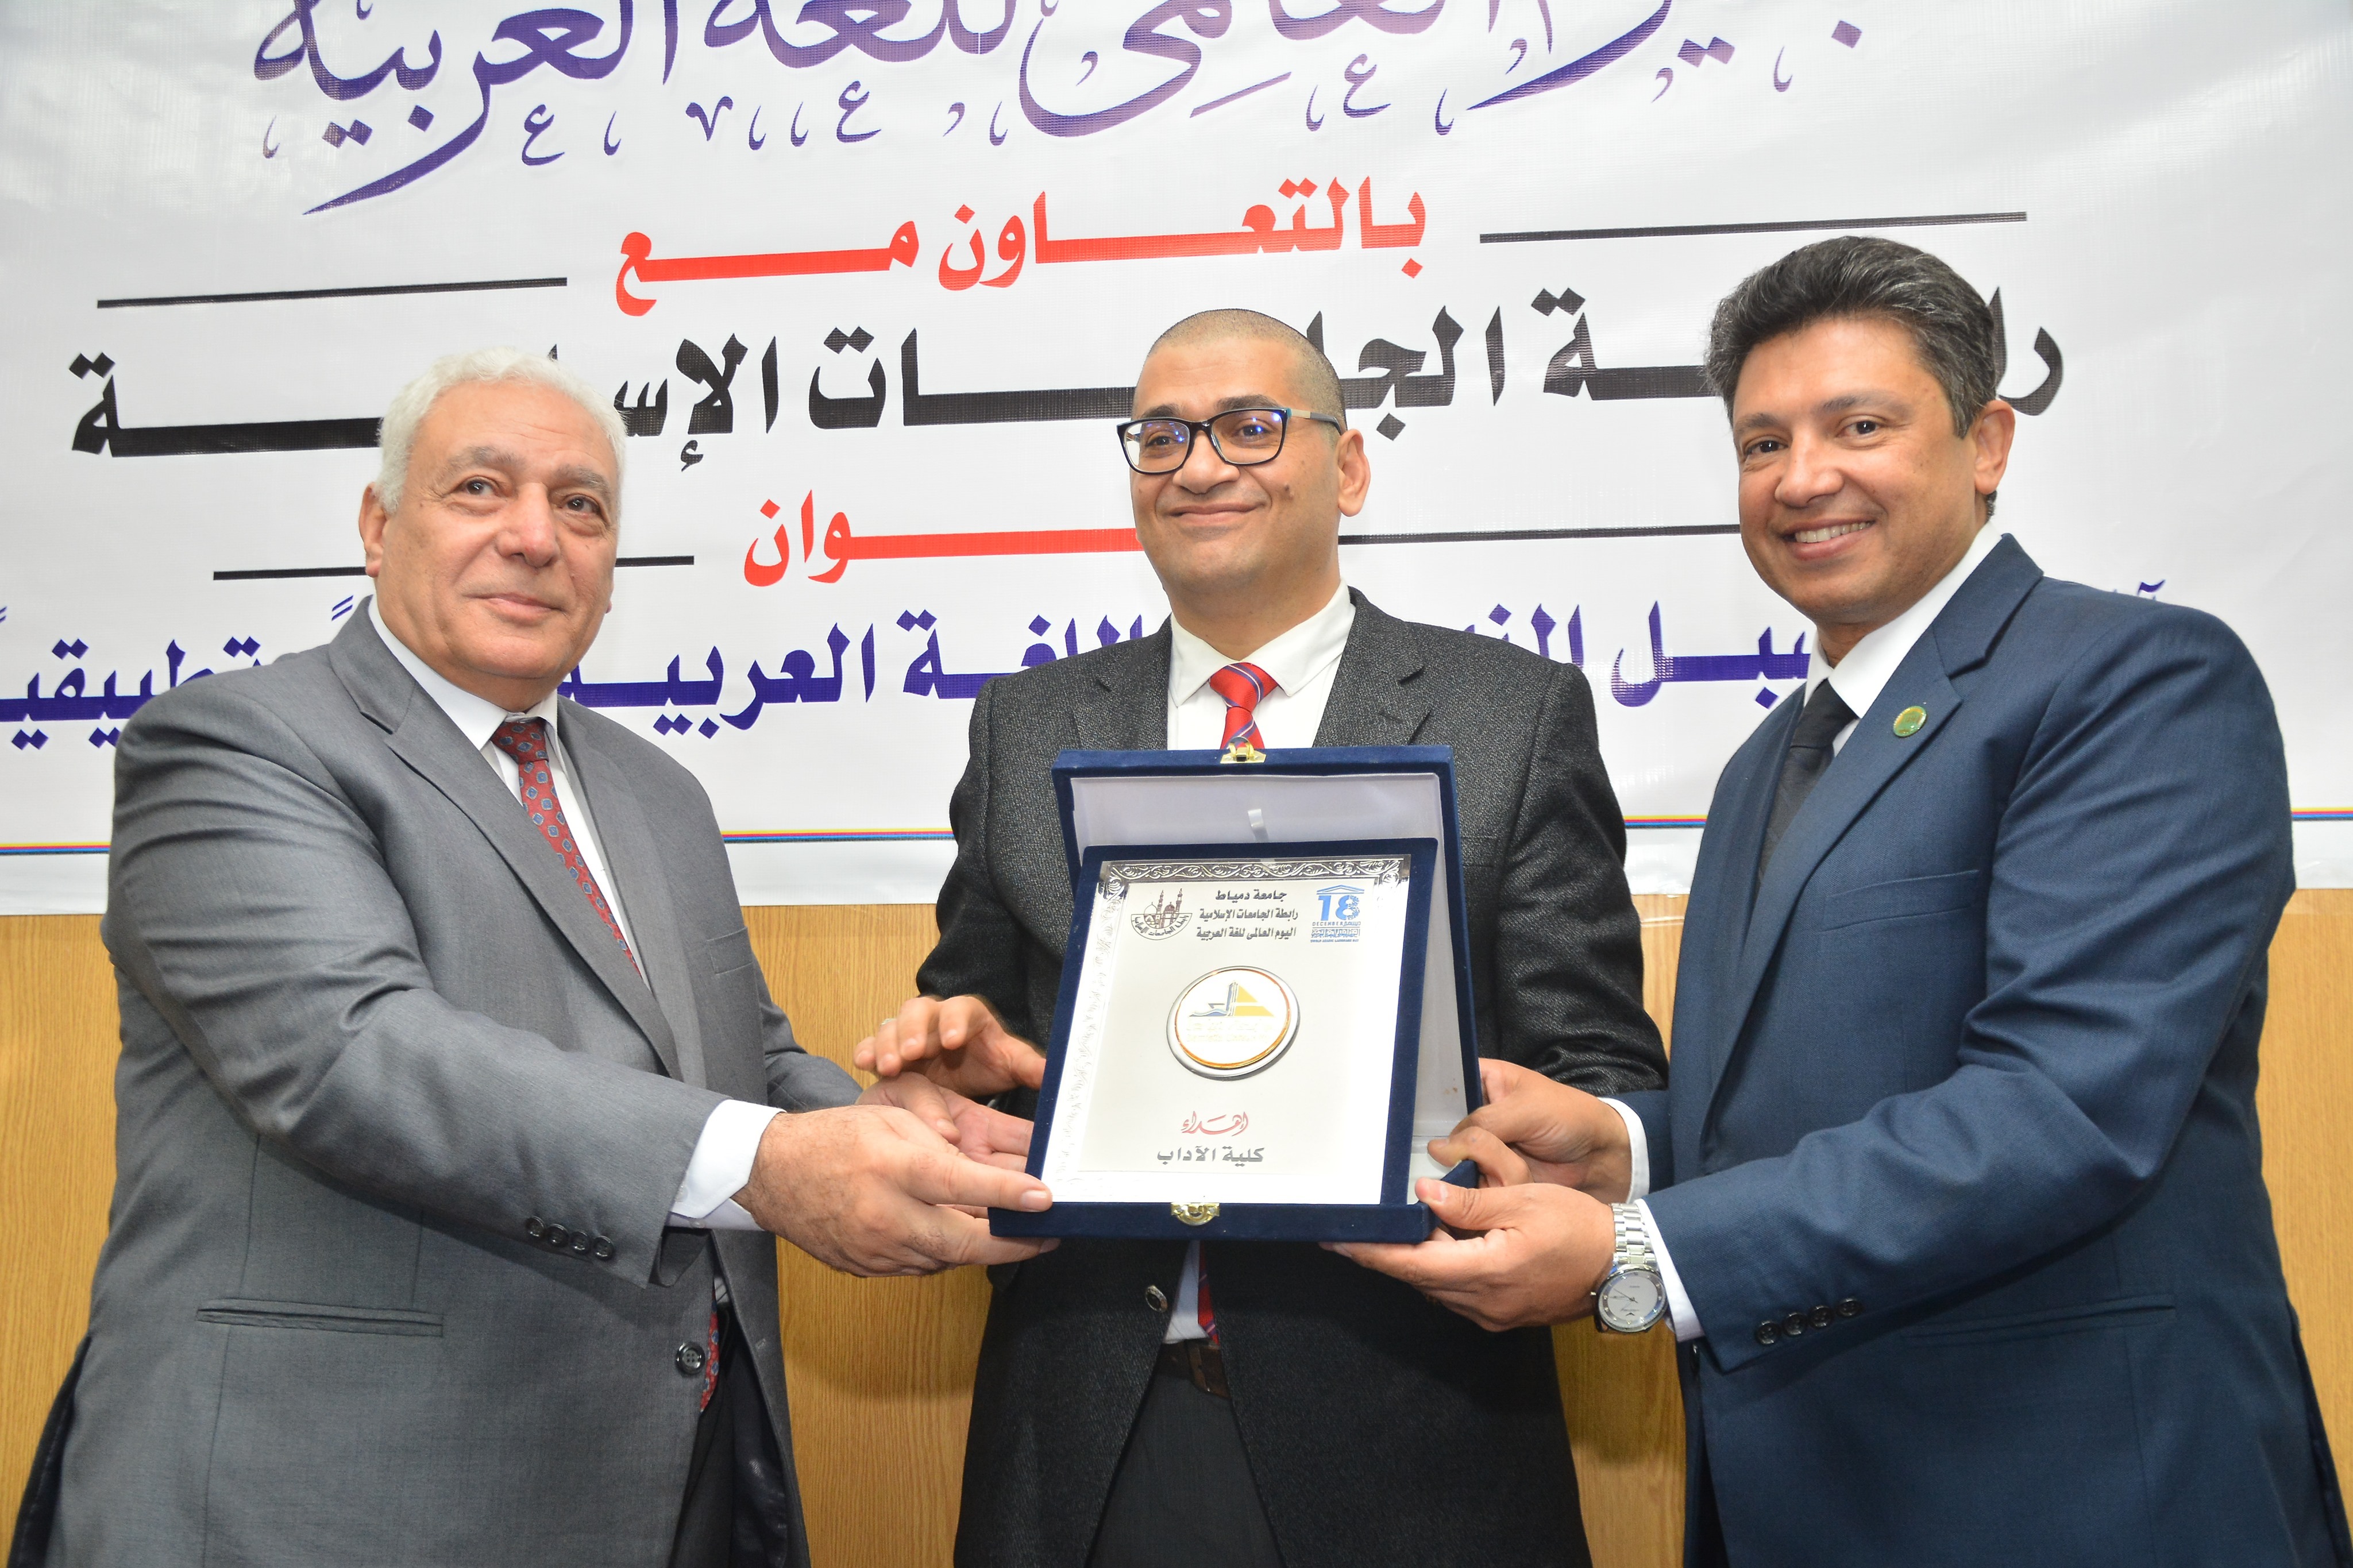 جامعة دمياط تكرّم الدكتور أحمد علي سليمان وتكلفه بإنشاء أول برنامج للخط العربي في سابقة هي الأولى من نوعها بالجامعات المصرية 